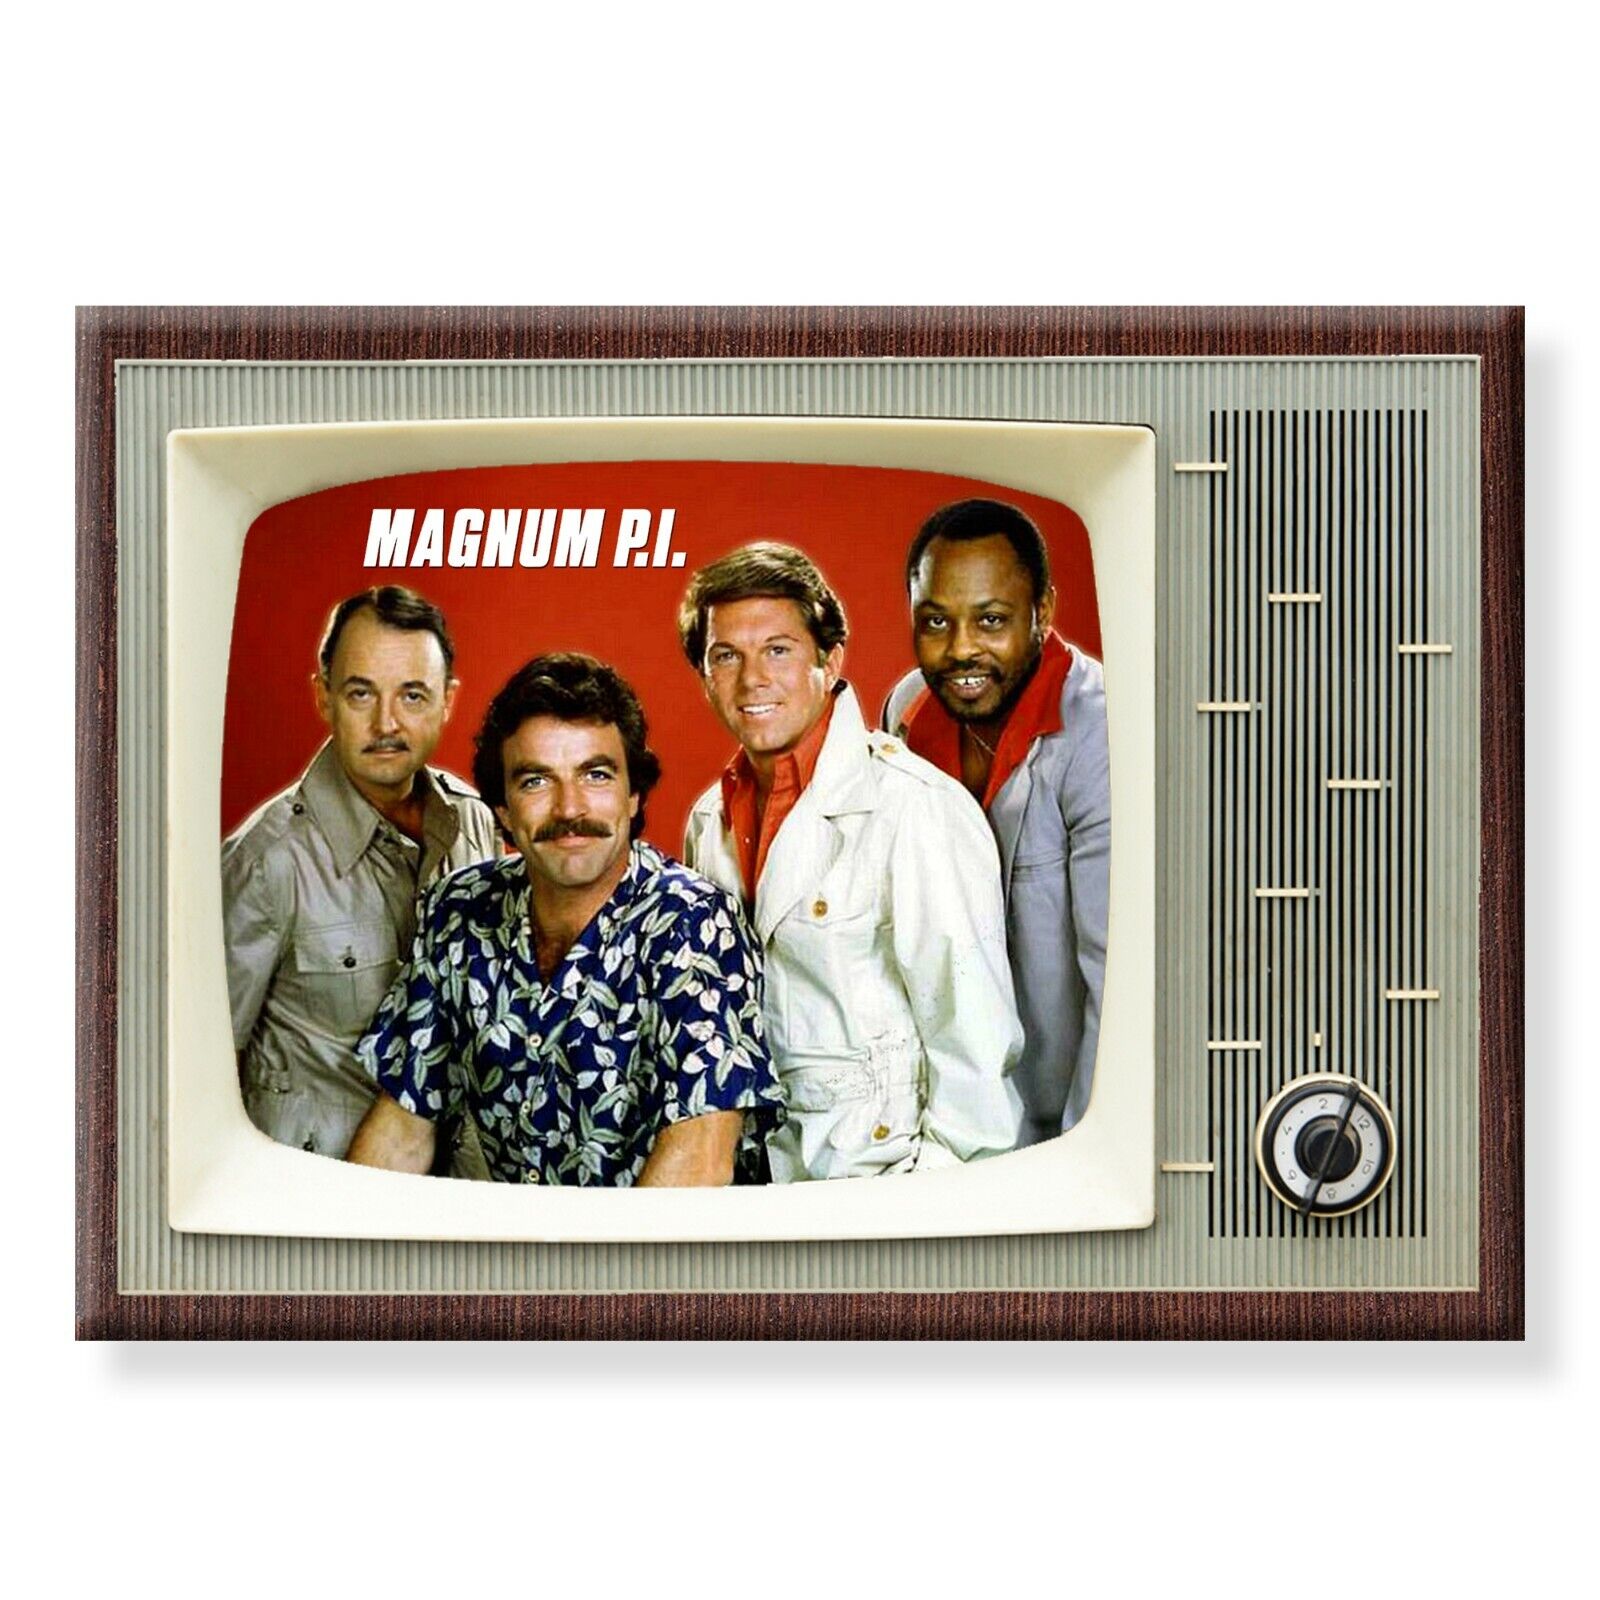 MAGNUM P.I. TV Show Classic TV 3.5 inches x 2.5 inches Steel FRIDGE MAGNET